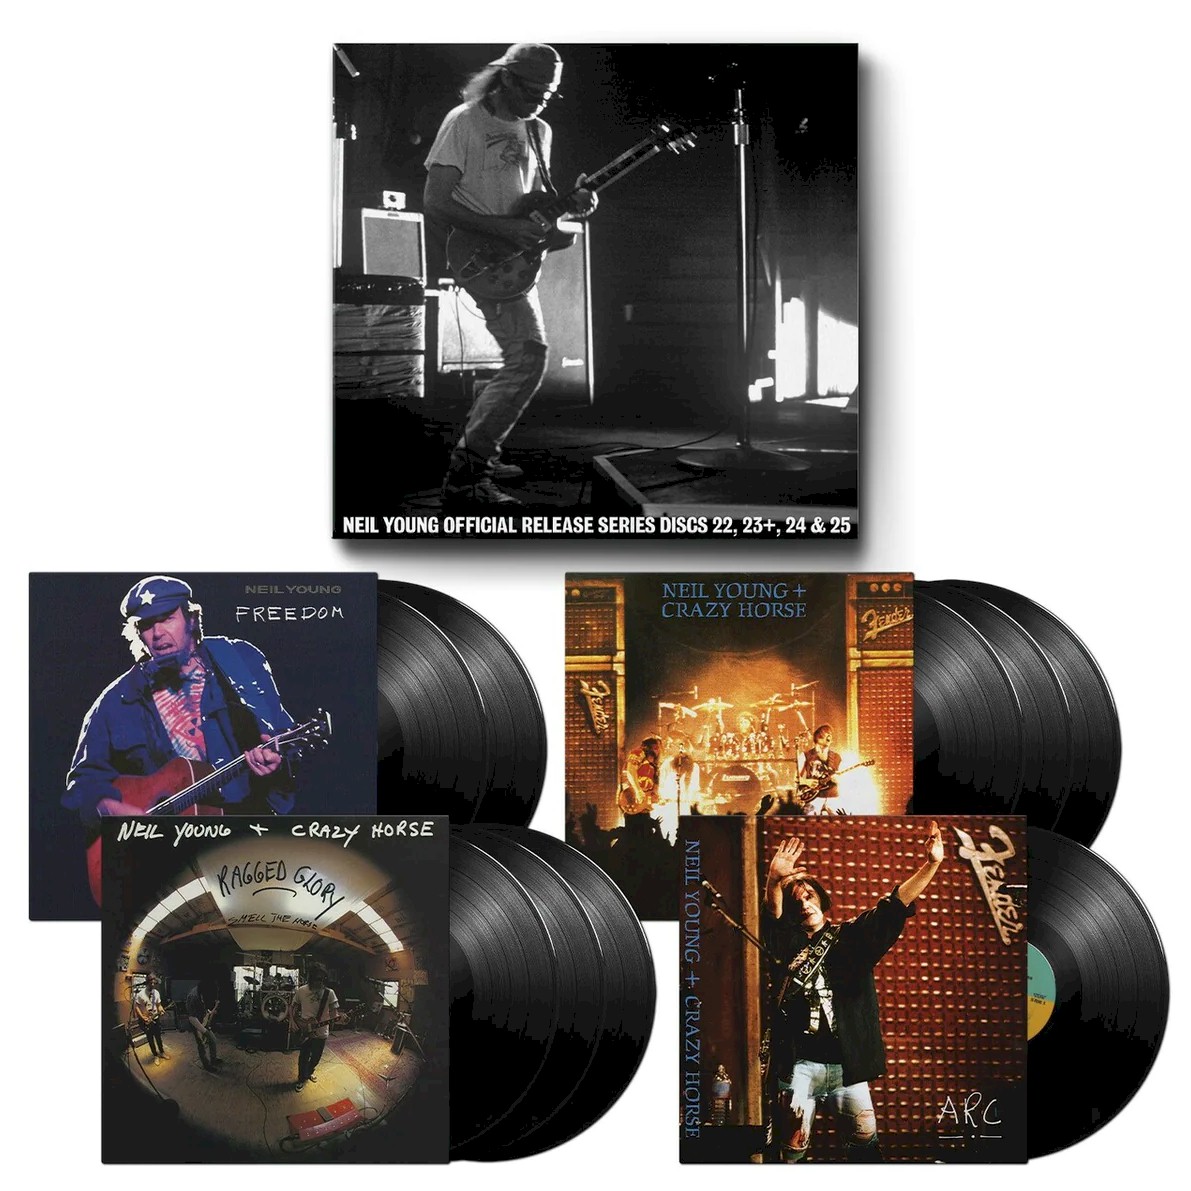 Neil Young relança discos clássicos de sua carreira em box set de 9 LP's